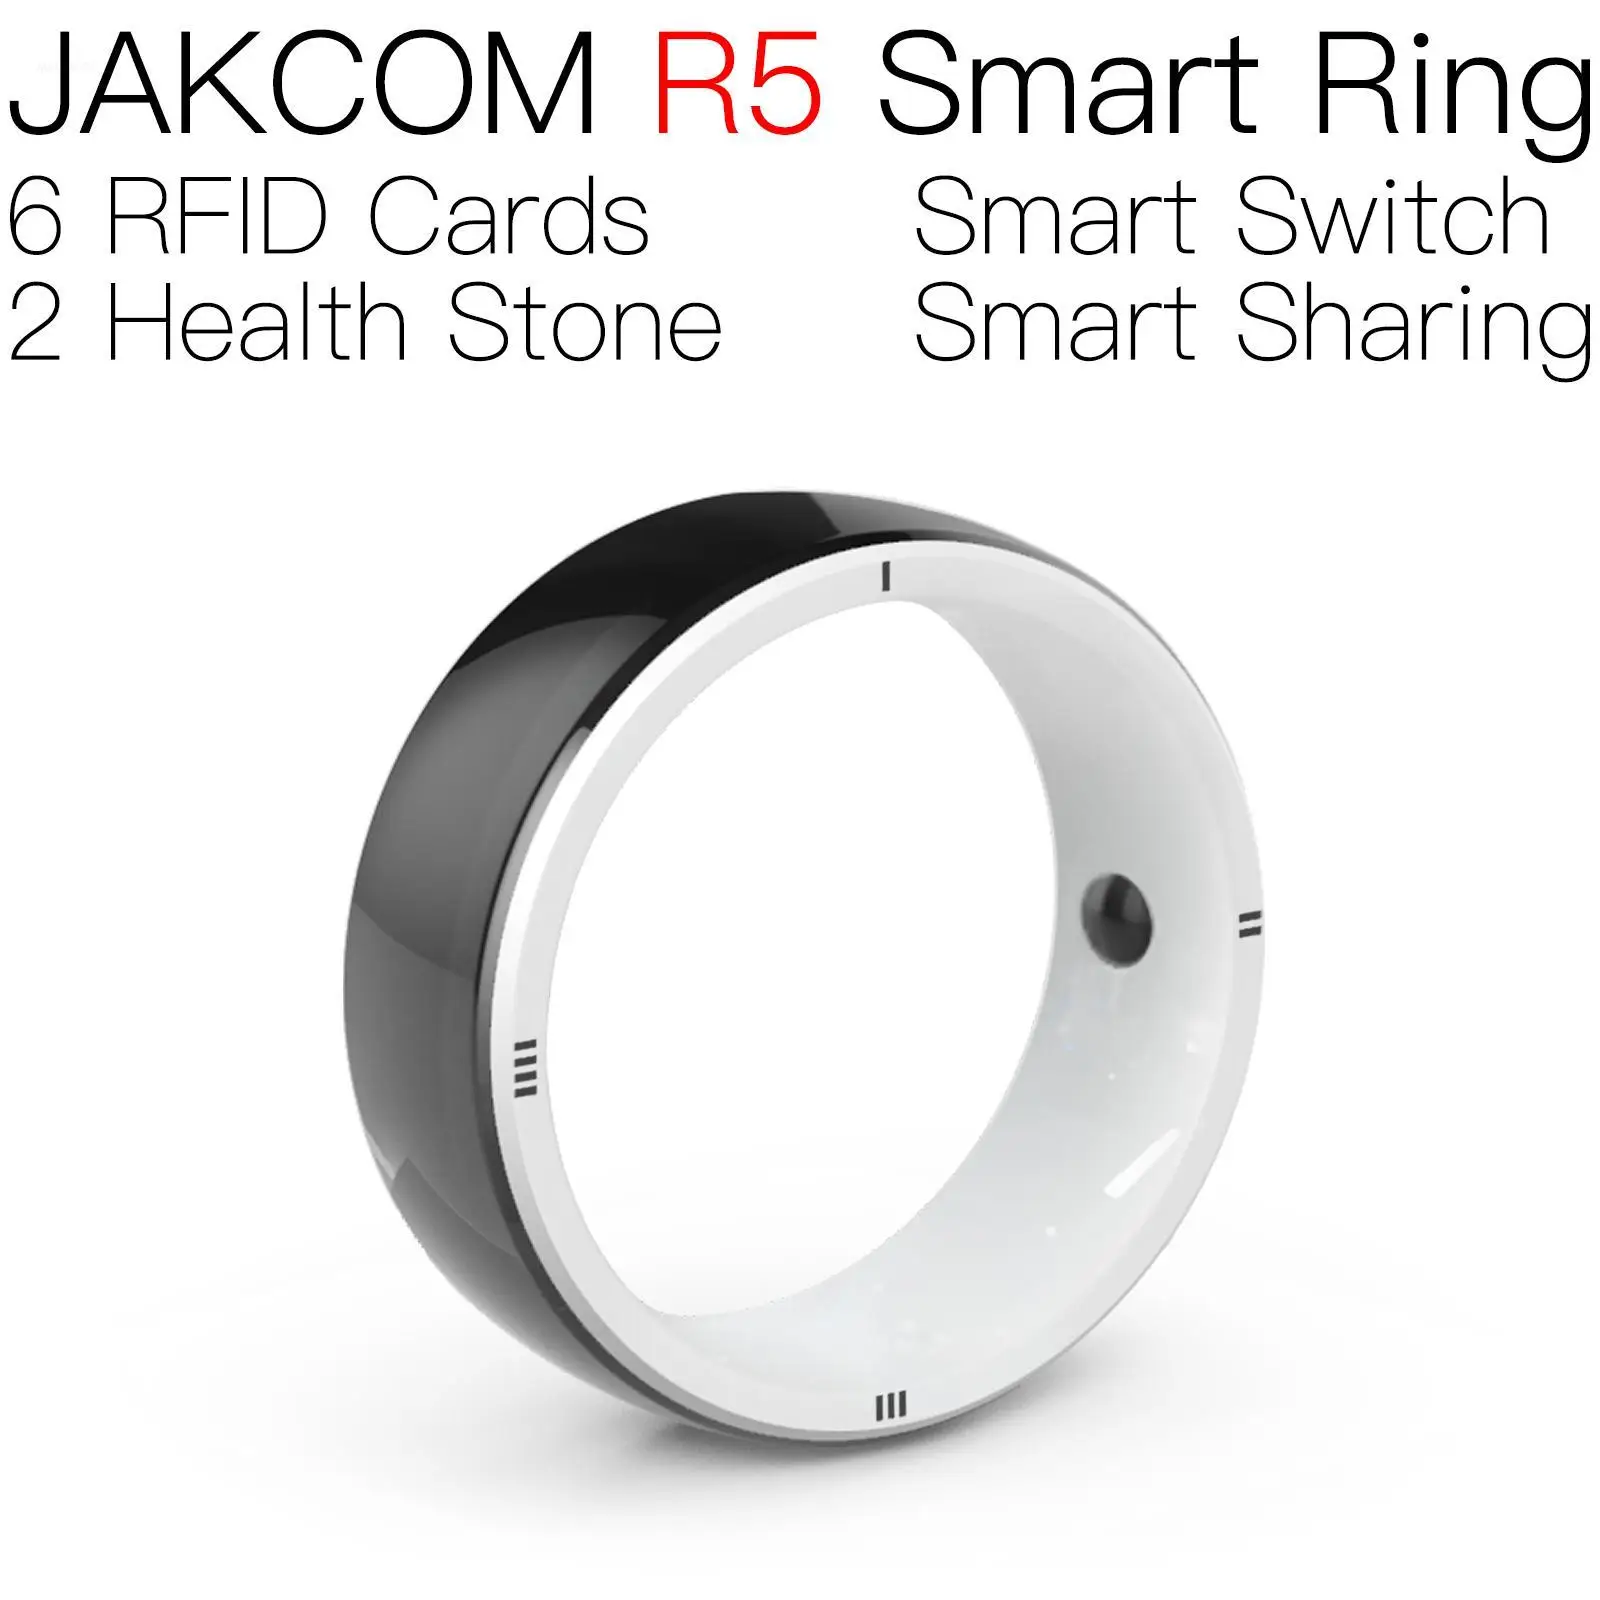 

Умное кольцо JAKCOM R5, лучше, чем раньше, бирка для монет и карт с наклейками, бирки, товары, металлический rfid-чип gen2 lg15u53, животное с микрочипом ldo s9